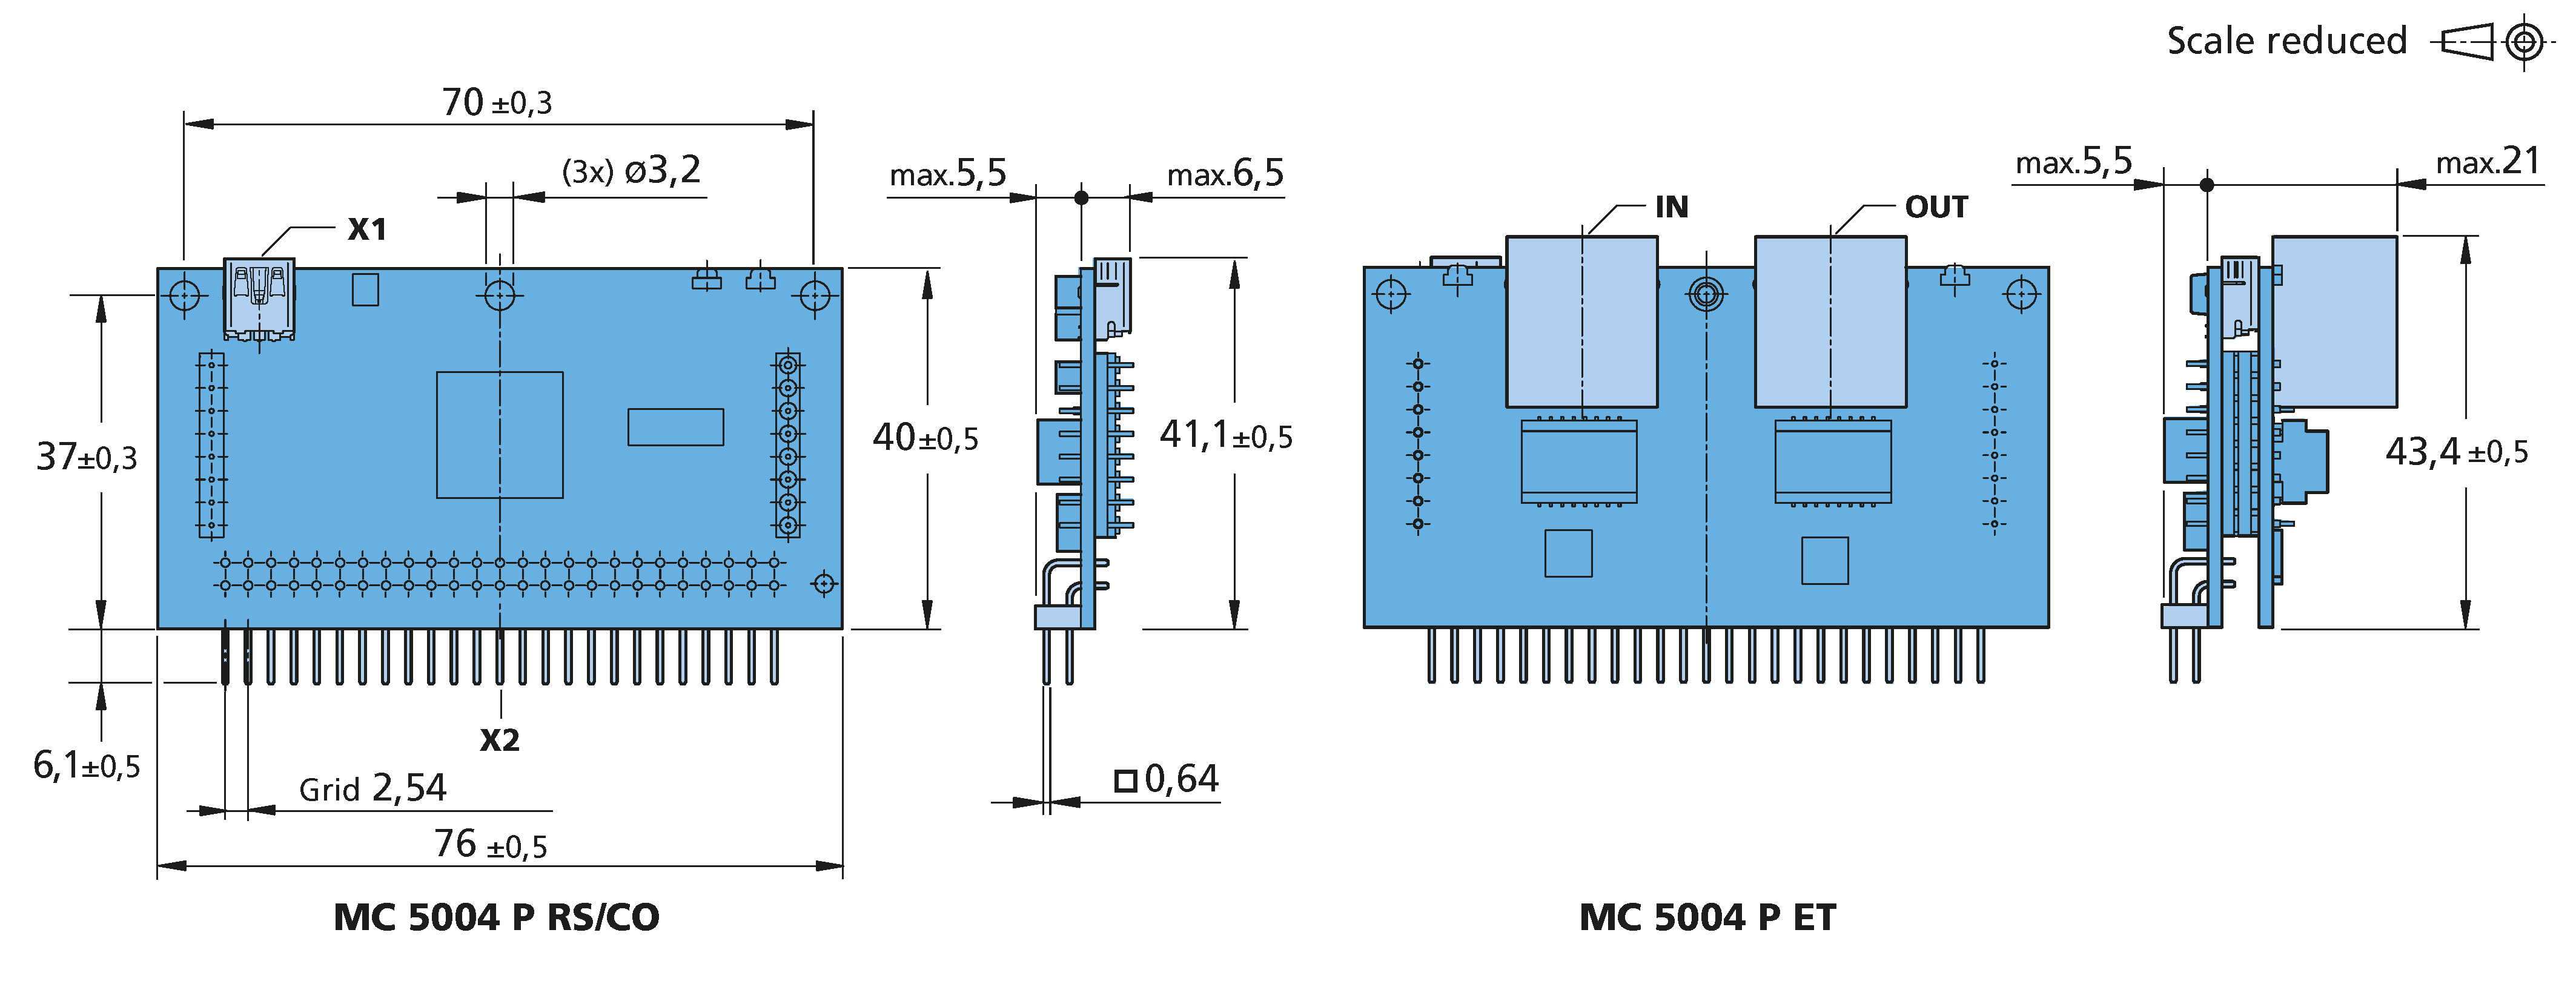 ドライブエレクトロニクス Series MC 5004 P